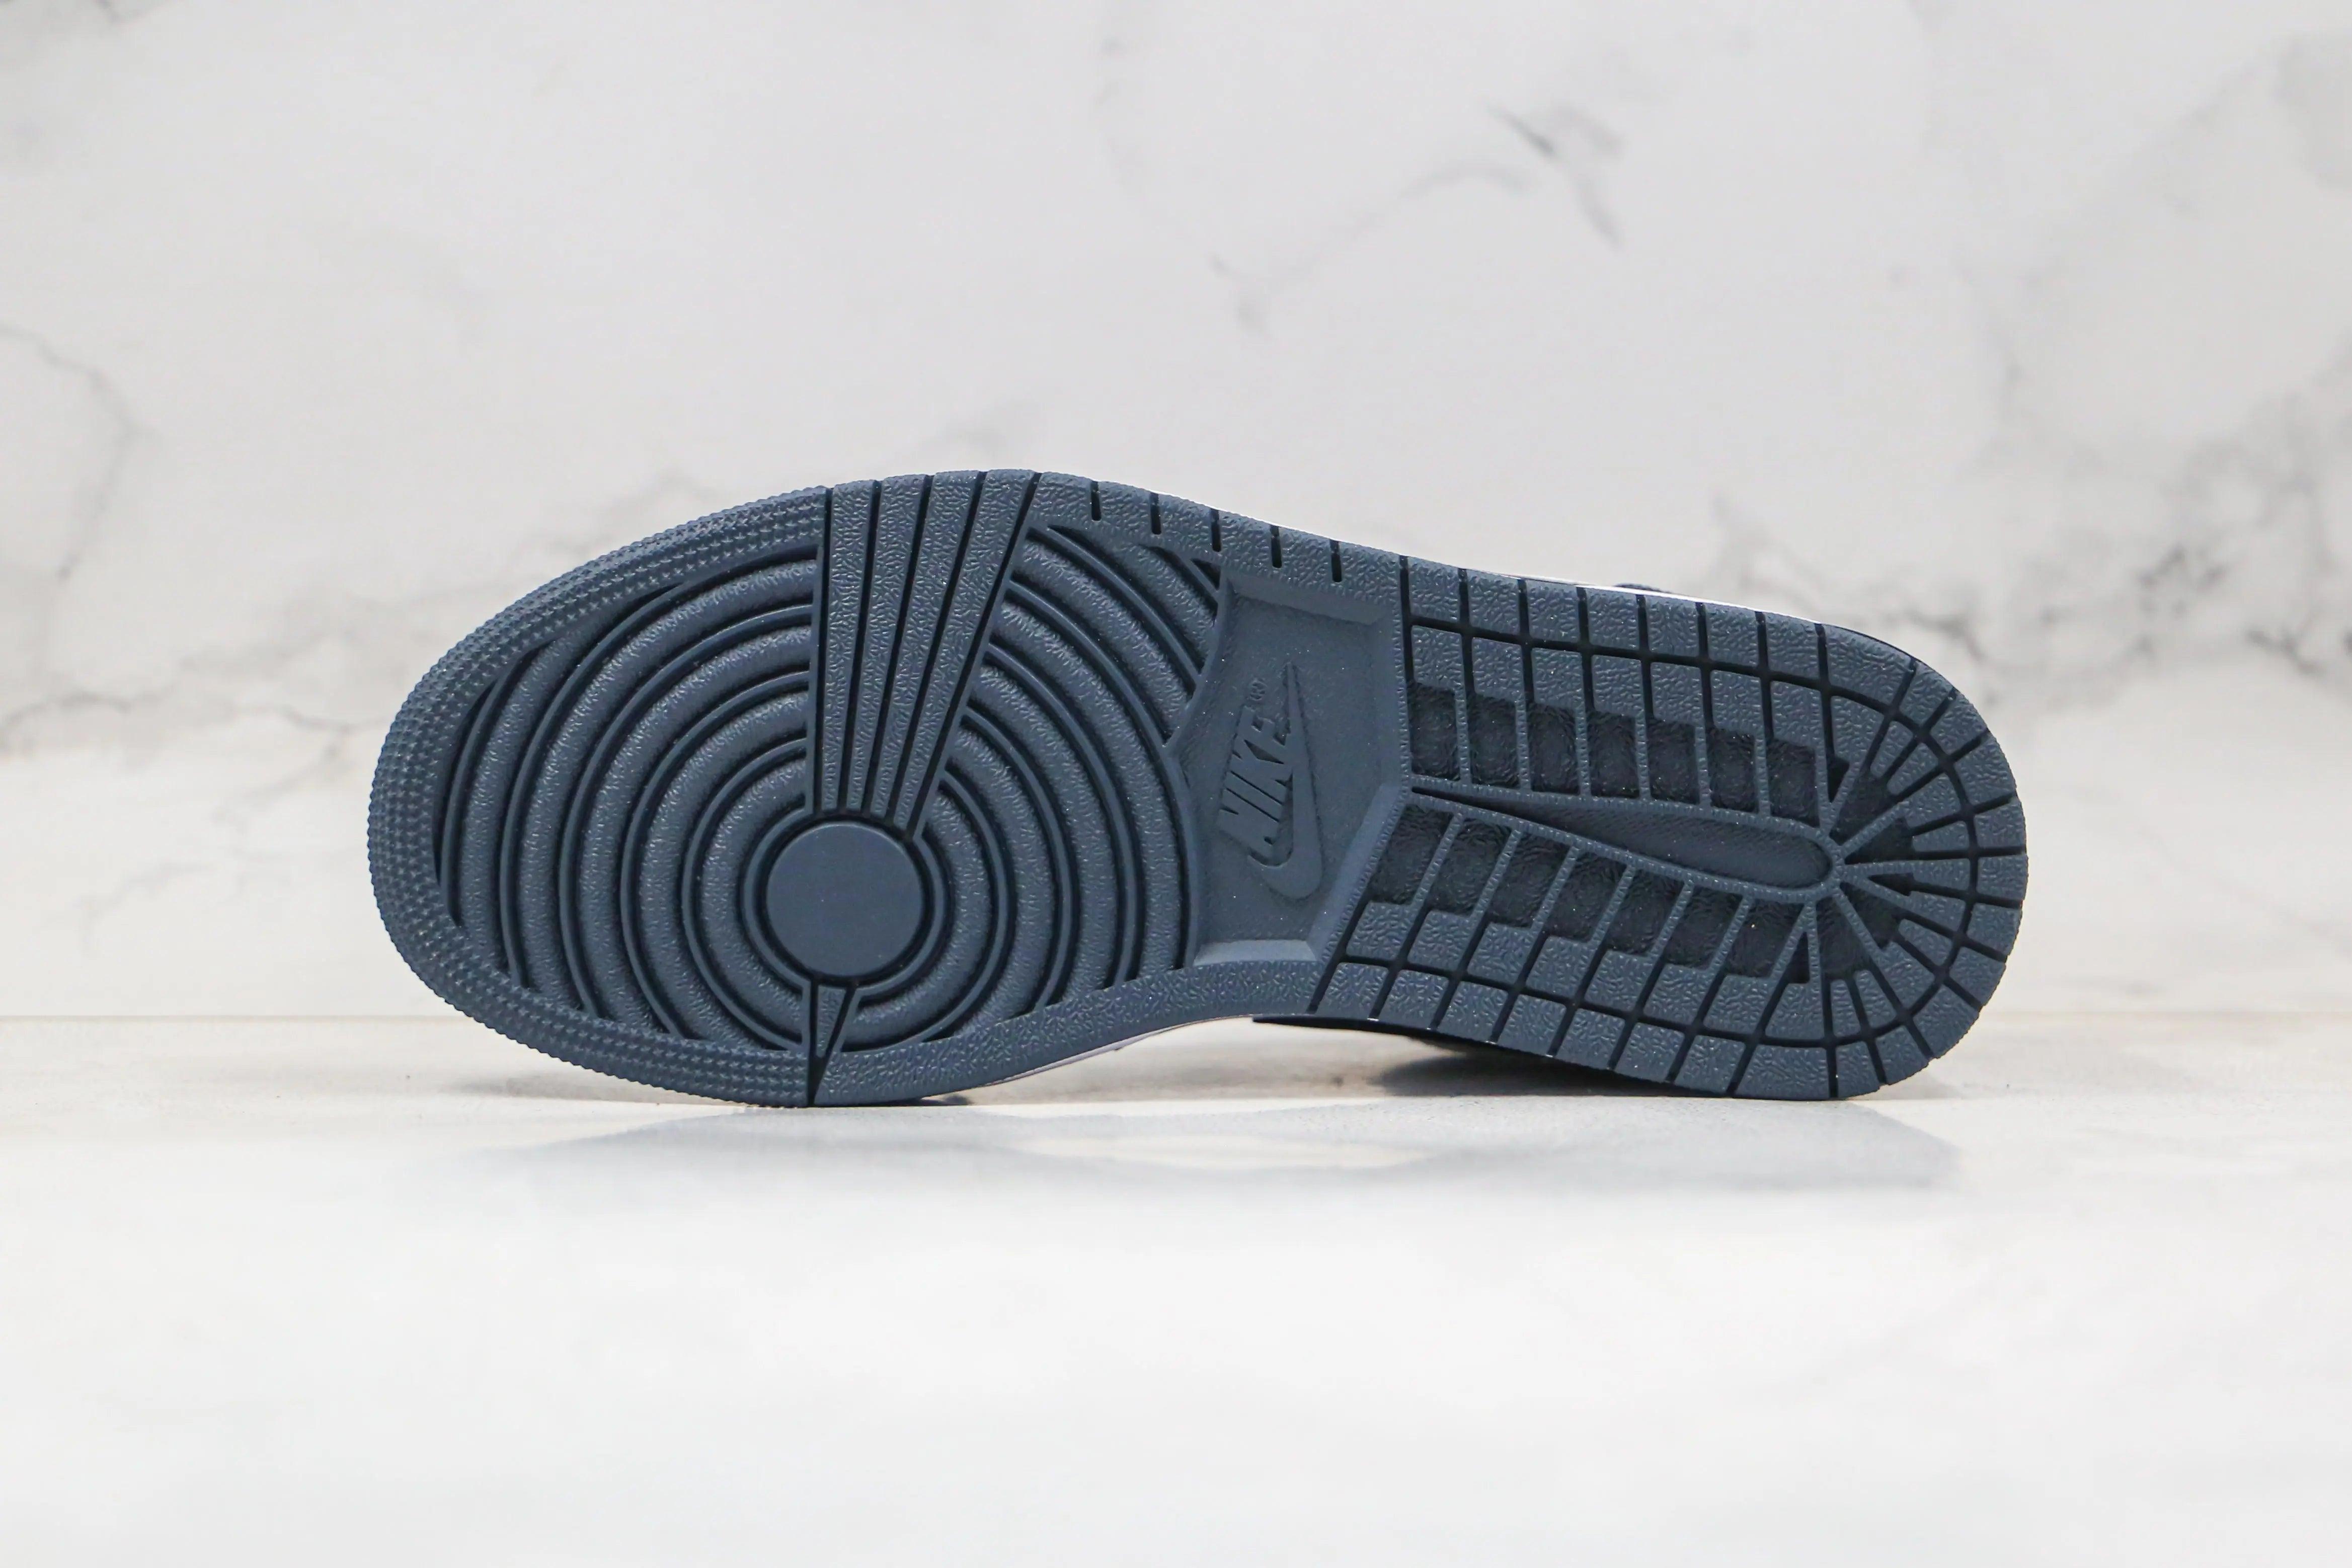 Custom Air Jordan 1 Low Dark Blue AJ1 High Q ( Customs And Box ), Jordan 1 Sneakers Active sneakerlandnet